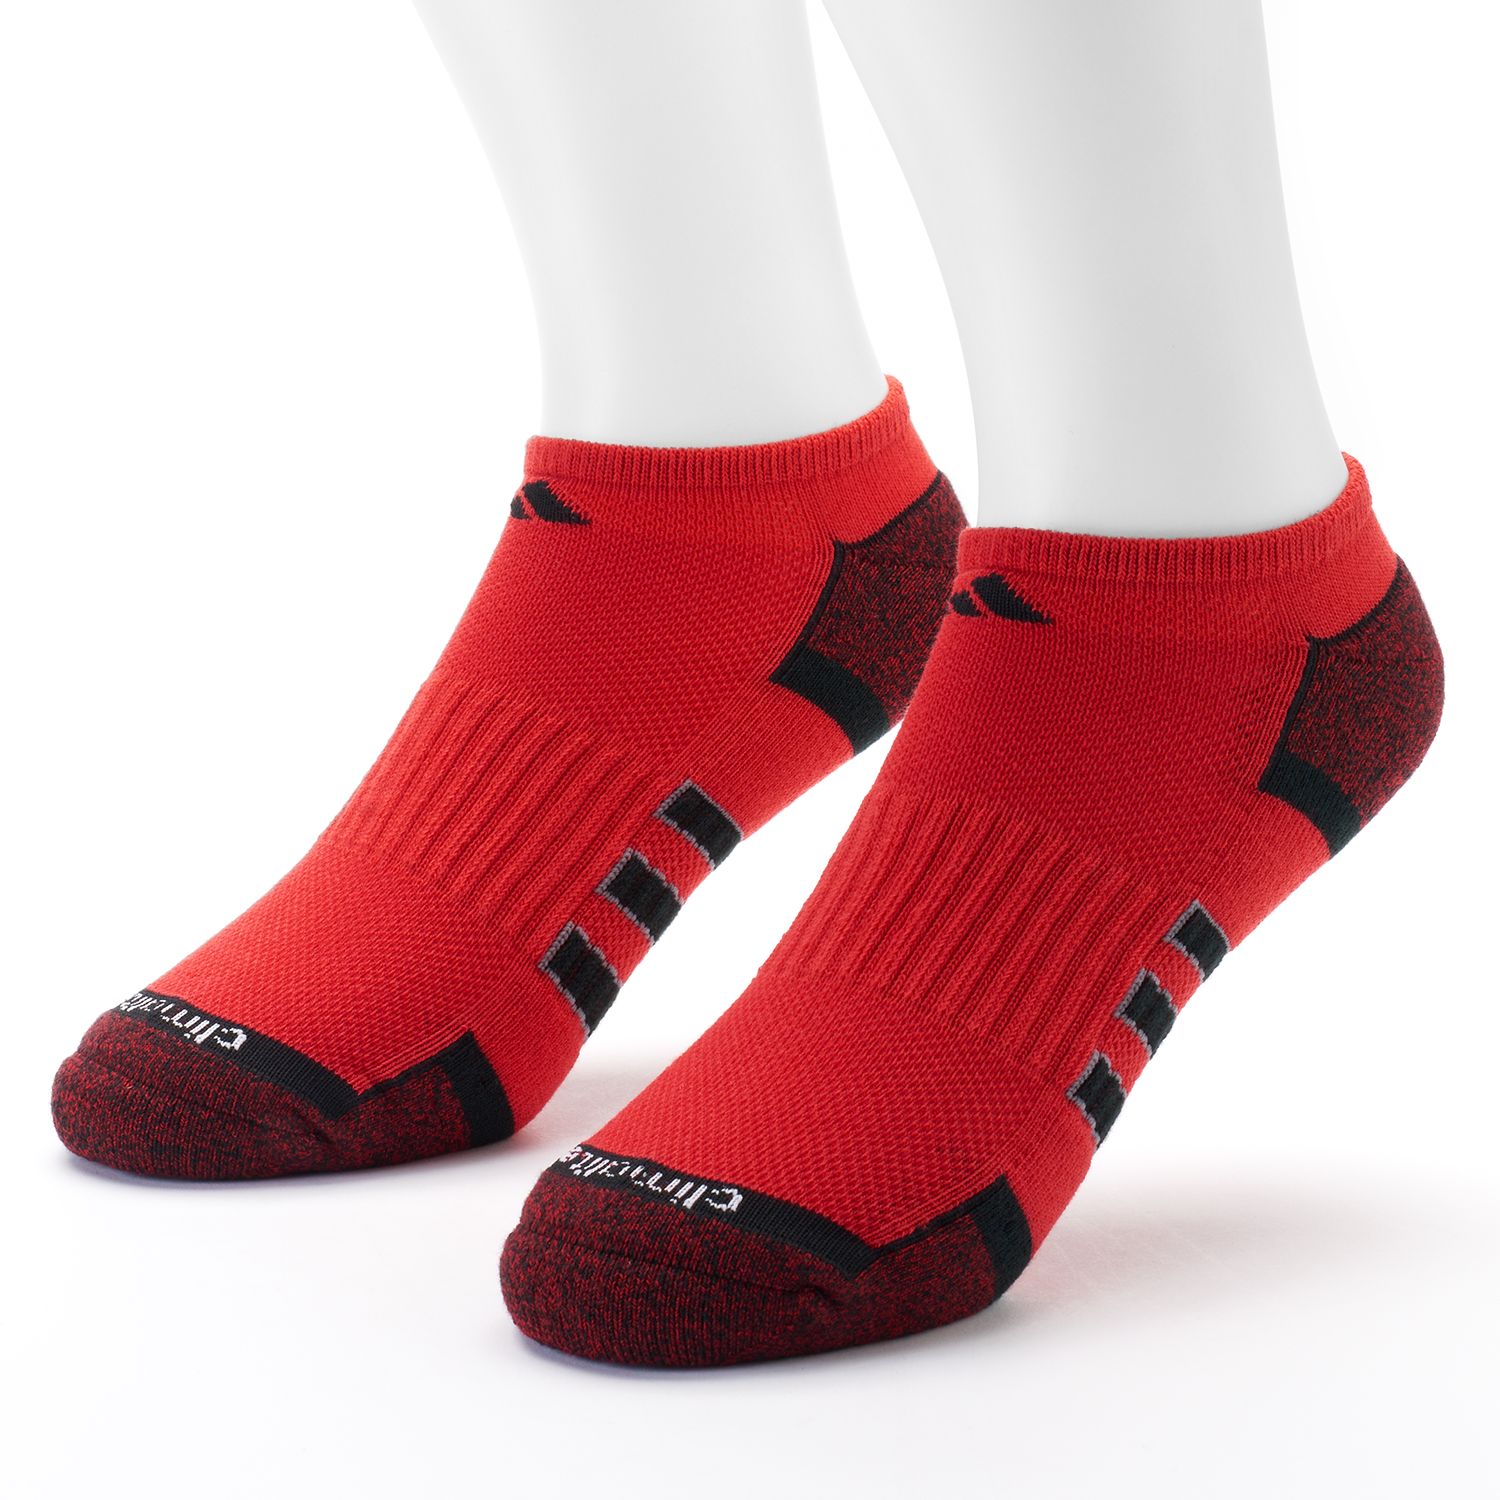 adidas climalite ankle socks